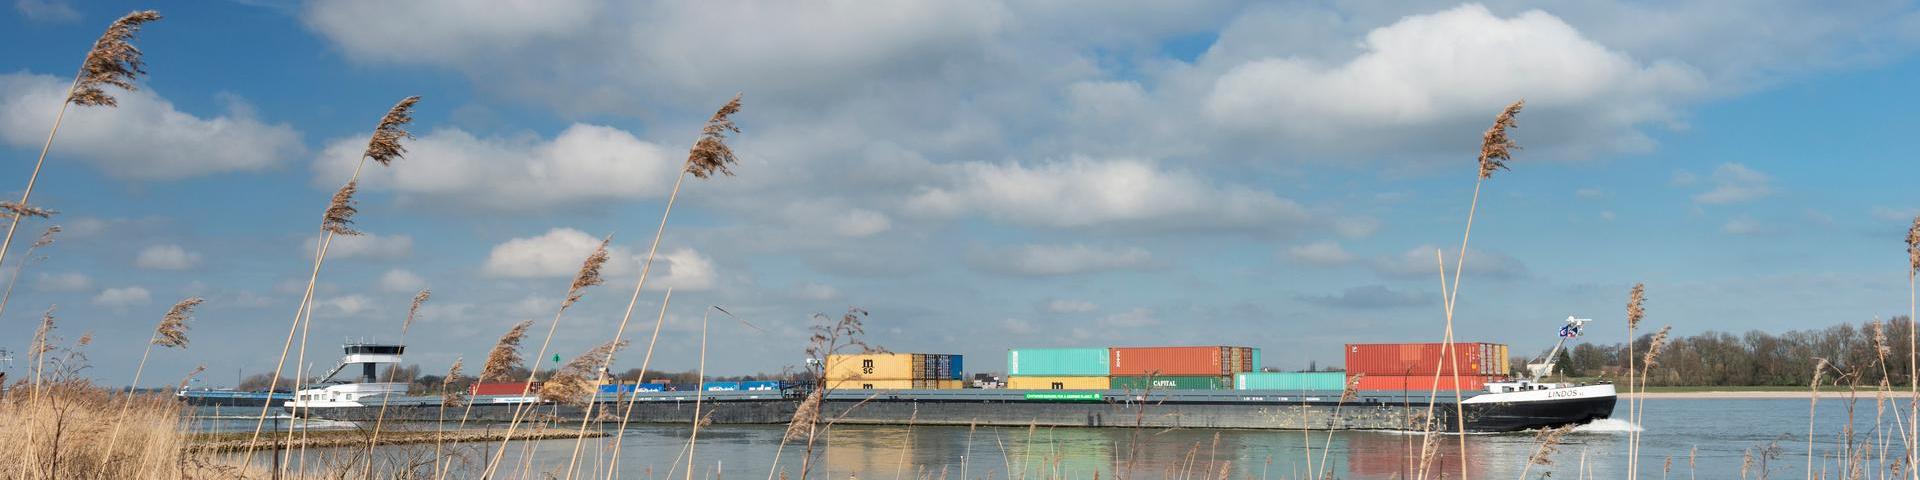 Nederland, Noord-Brabant, Gameren, maart 2014 Een binnenvaartschip met containers vaart stroomopwaarts op de rivier de Waal, riet op de voorgrond op de oever, wolkjes in de lucht.